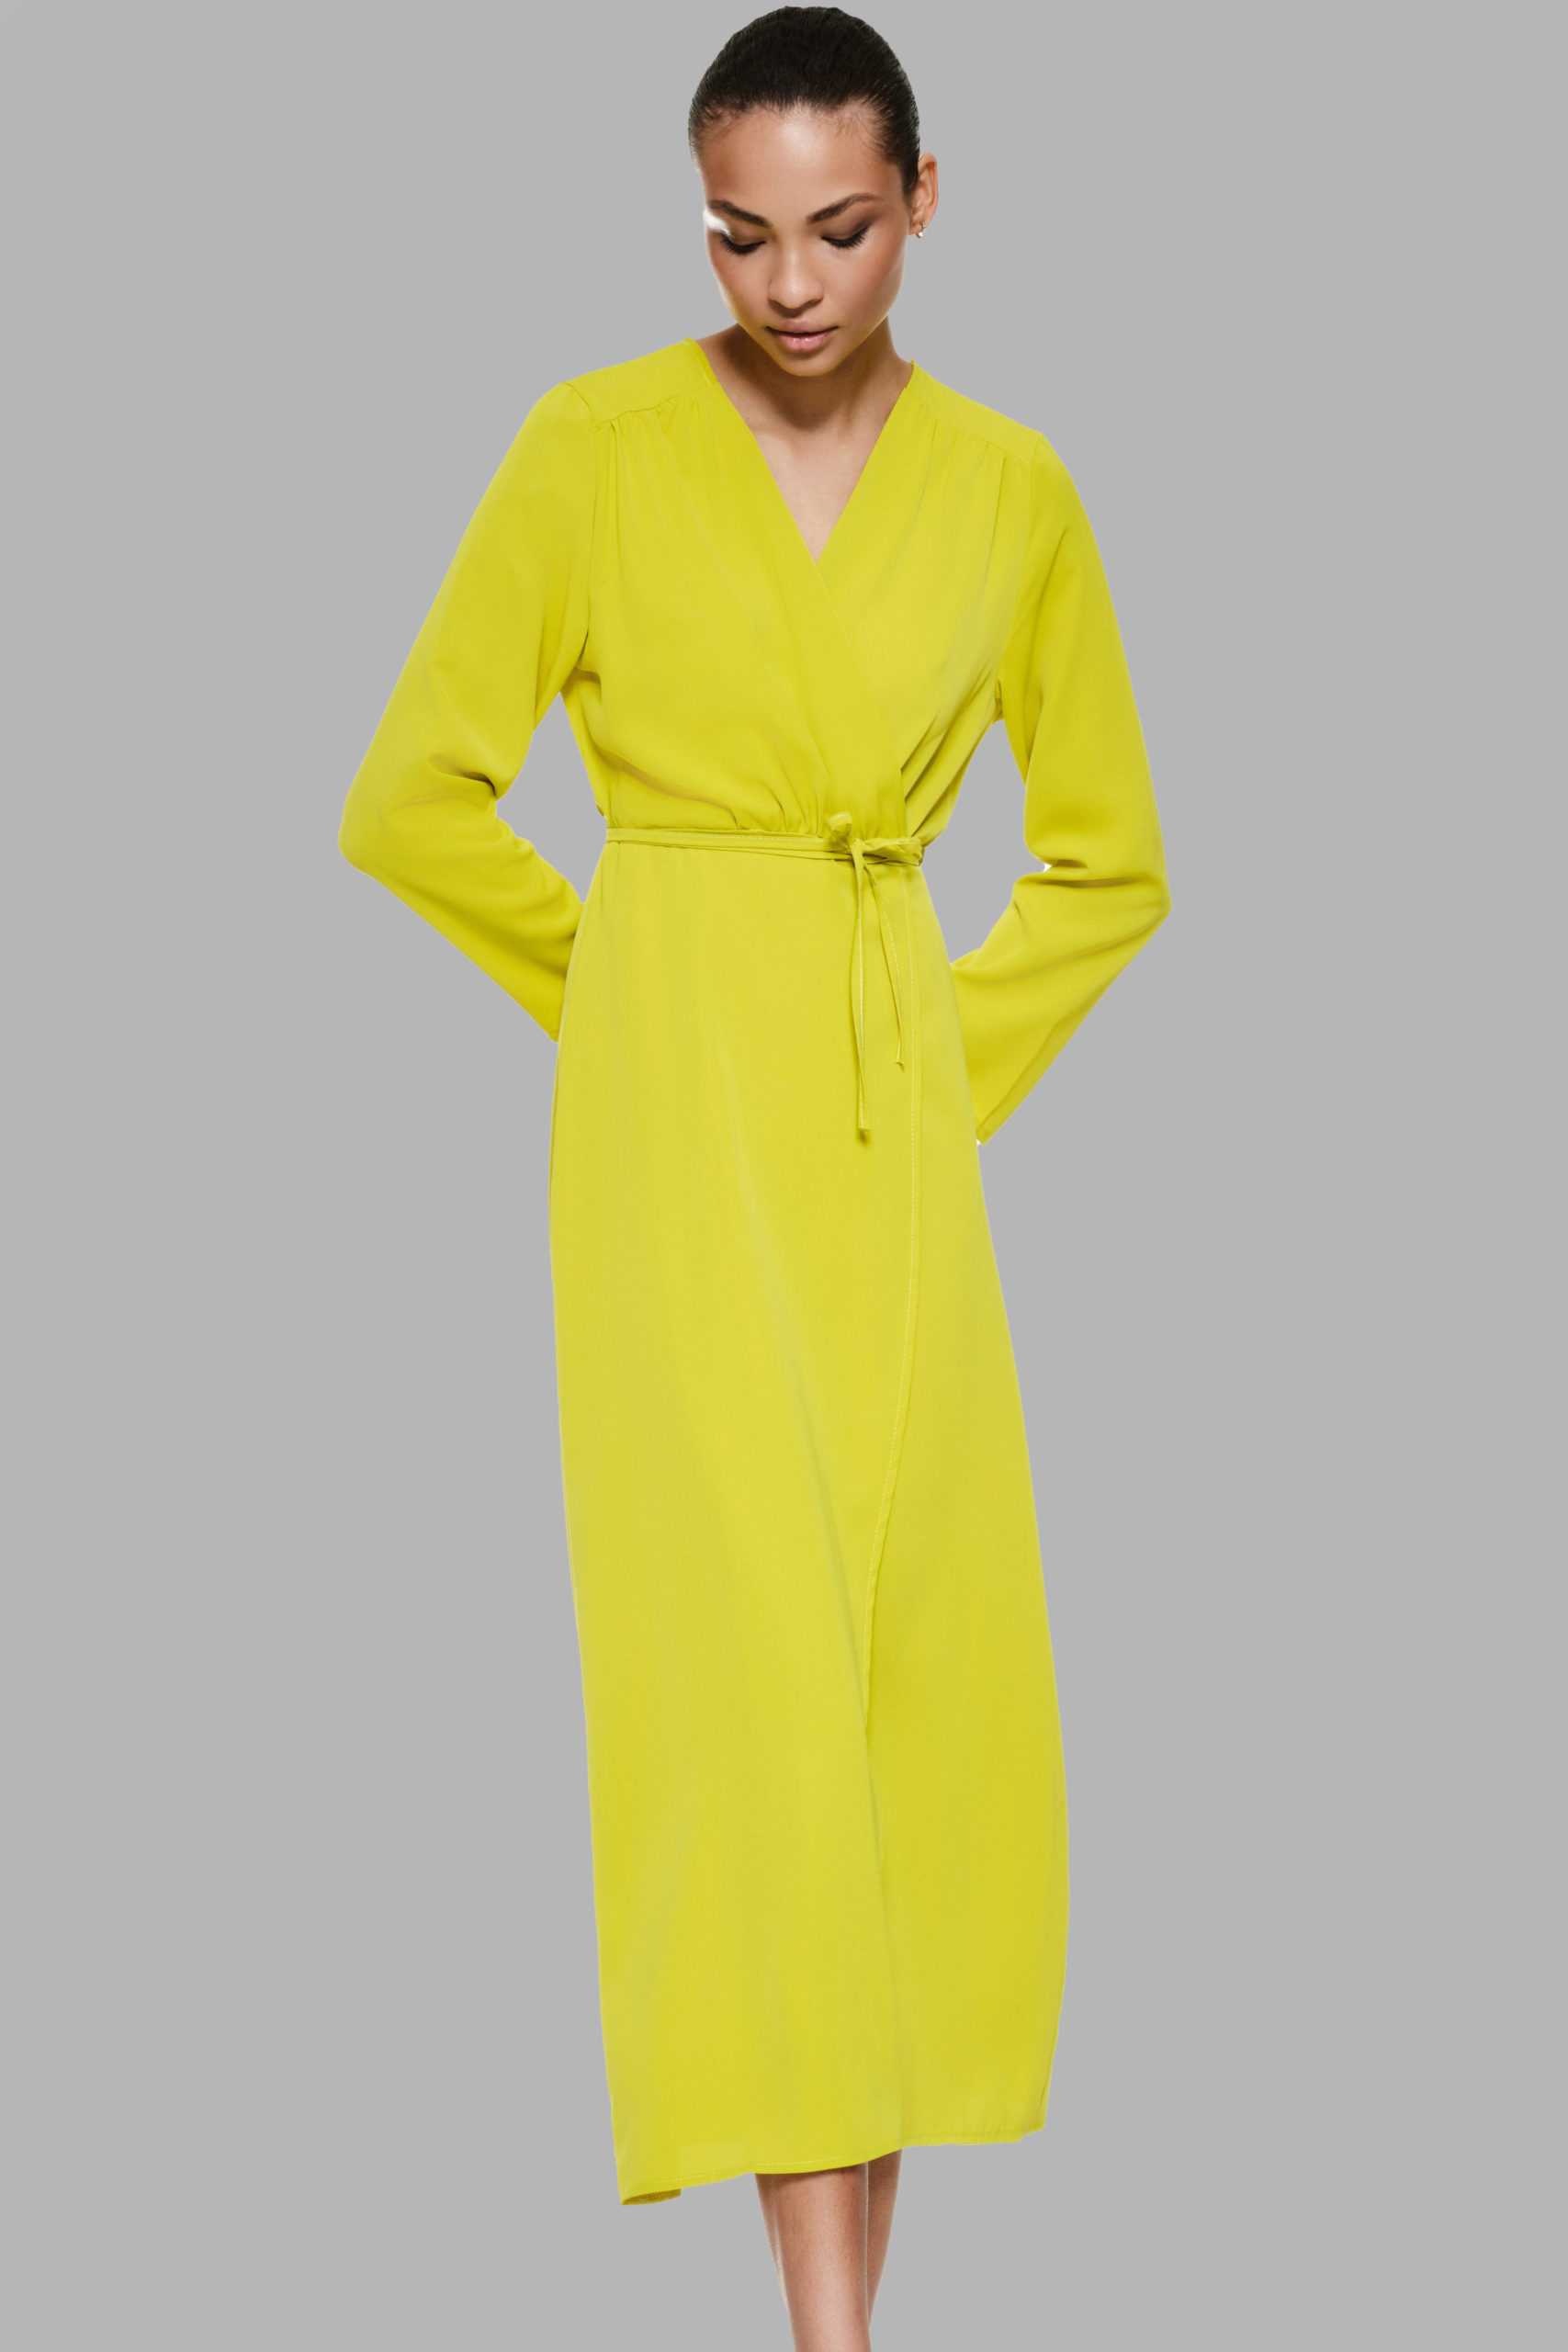 longue robe jaune femme